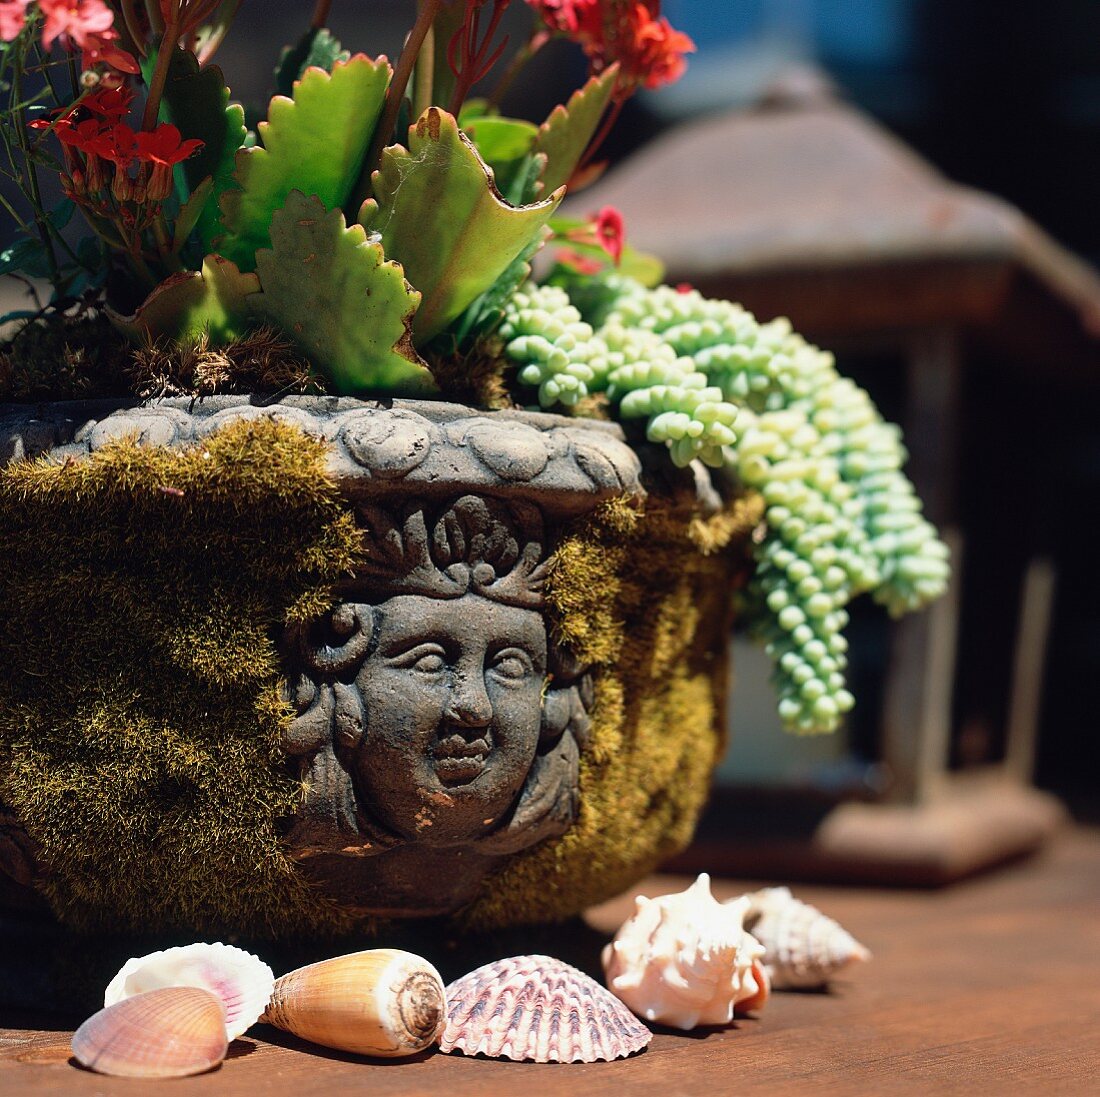 Antikes Pflanzengefäss mit Blumen und Muschelgehäuse auf Holztisch